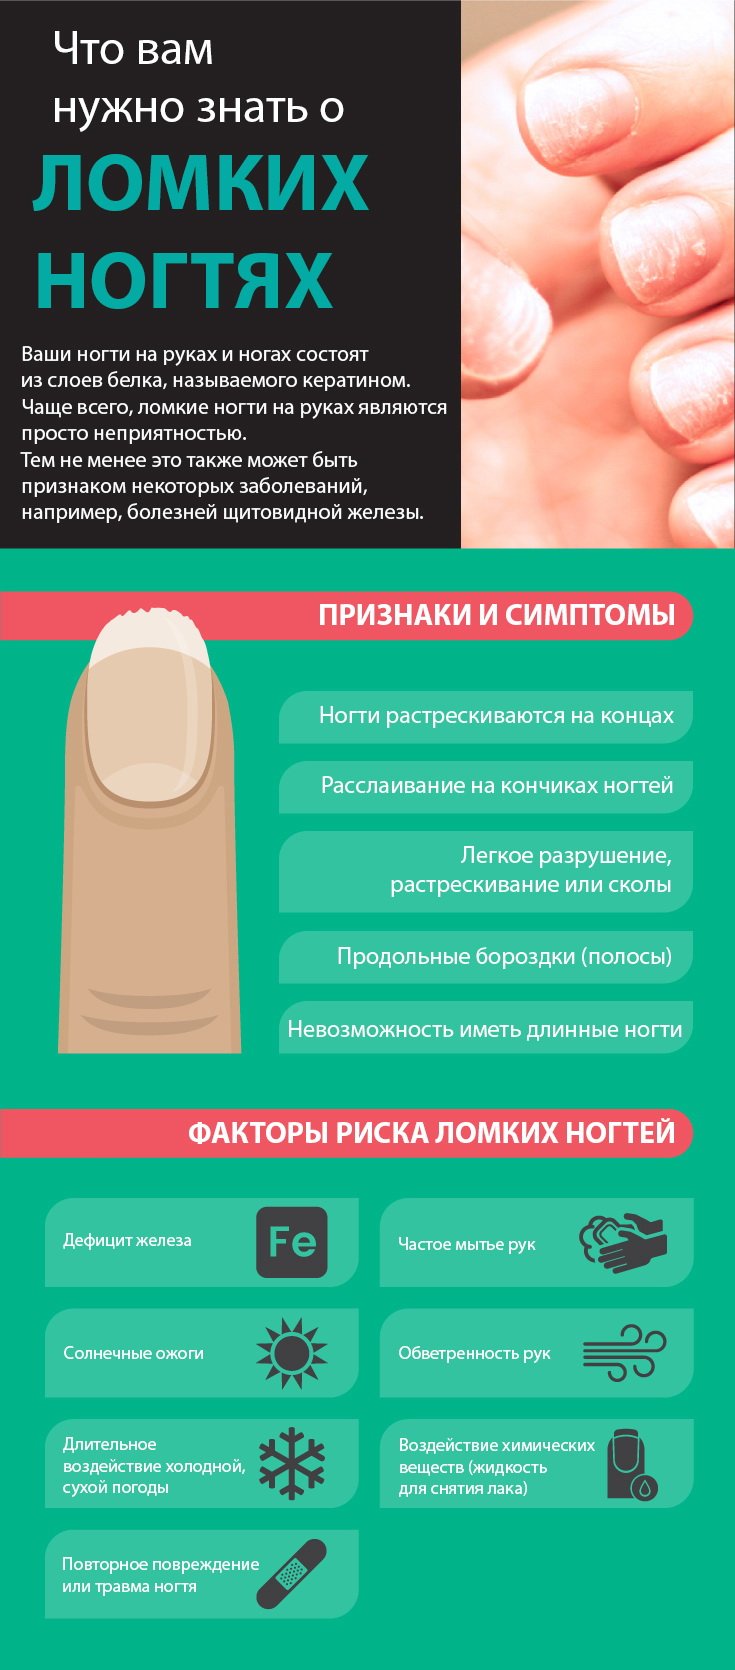 Причины, симптомы и признаки ломких ногтей